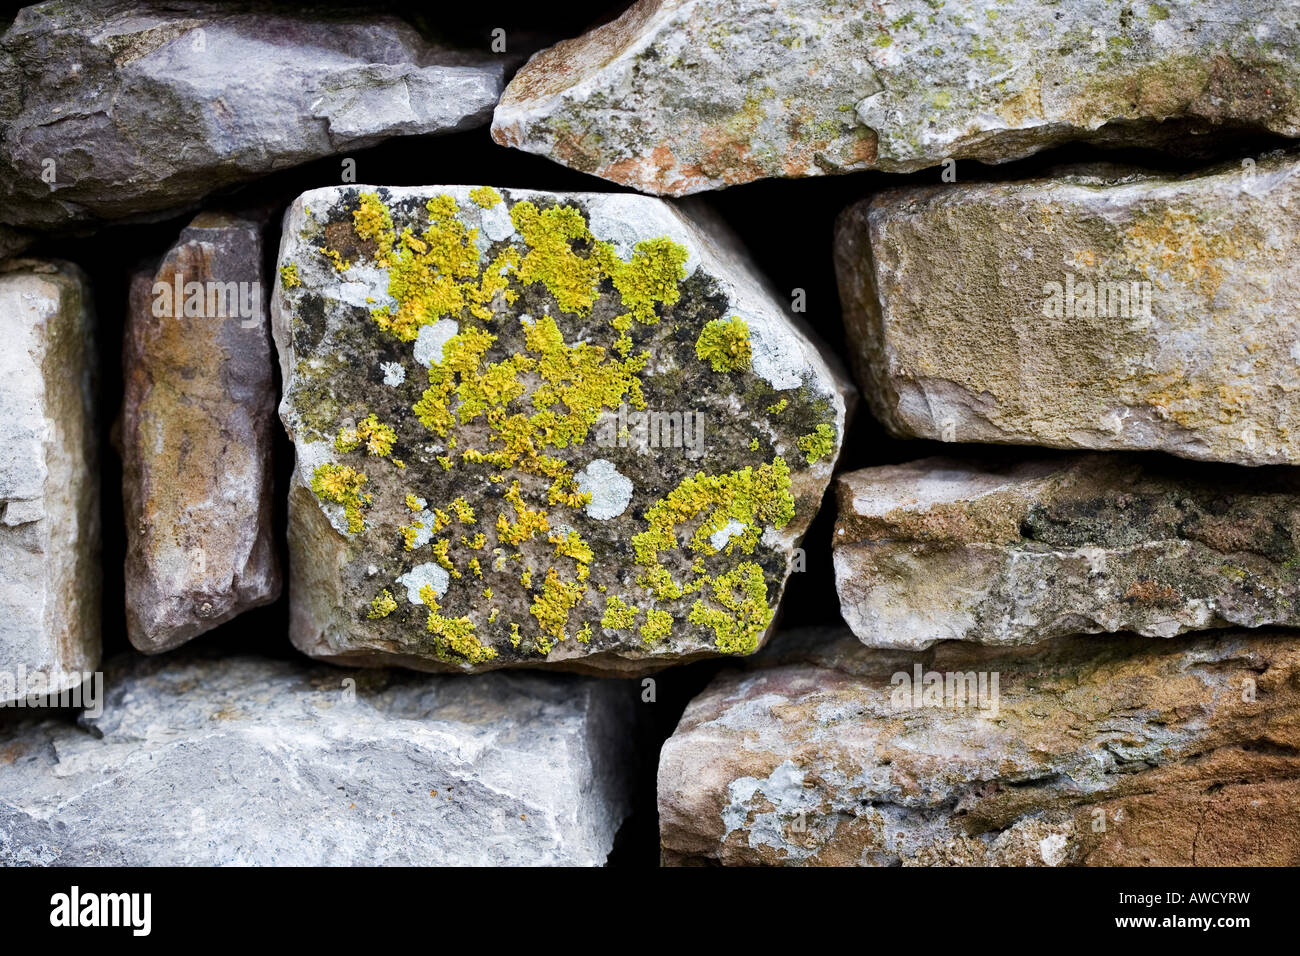 lichen on a dry stone wall, cumbria Stock Photo